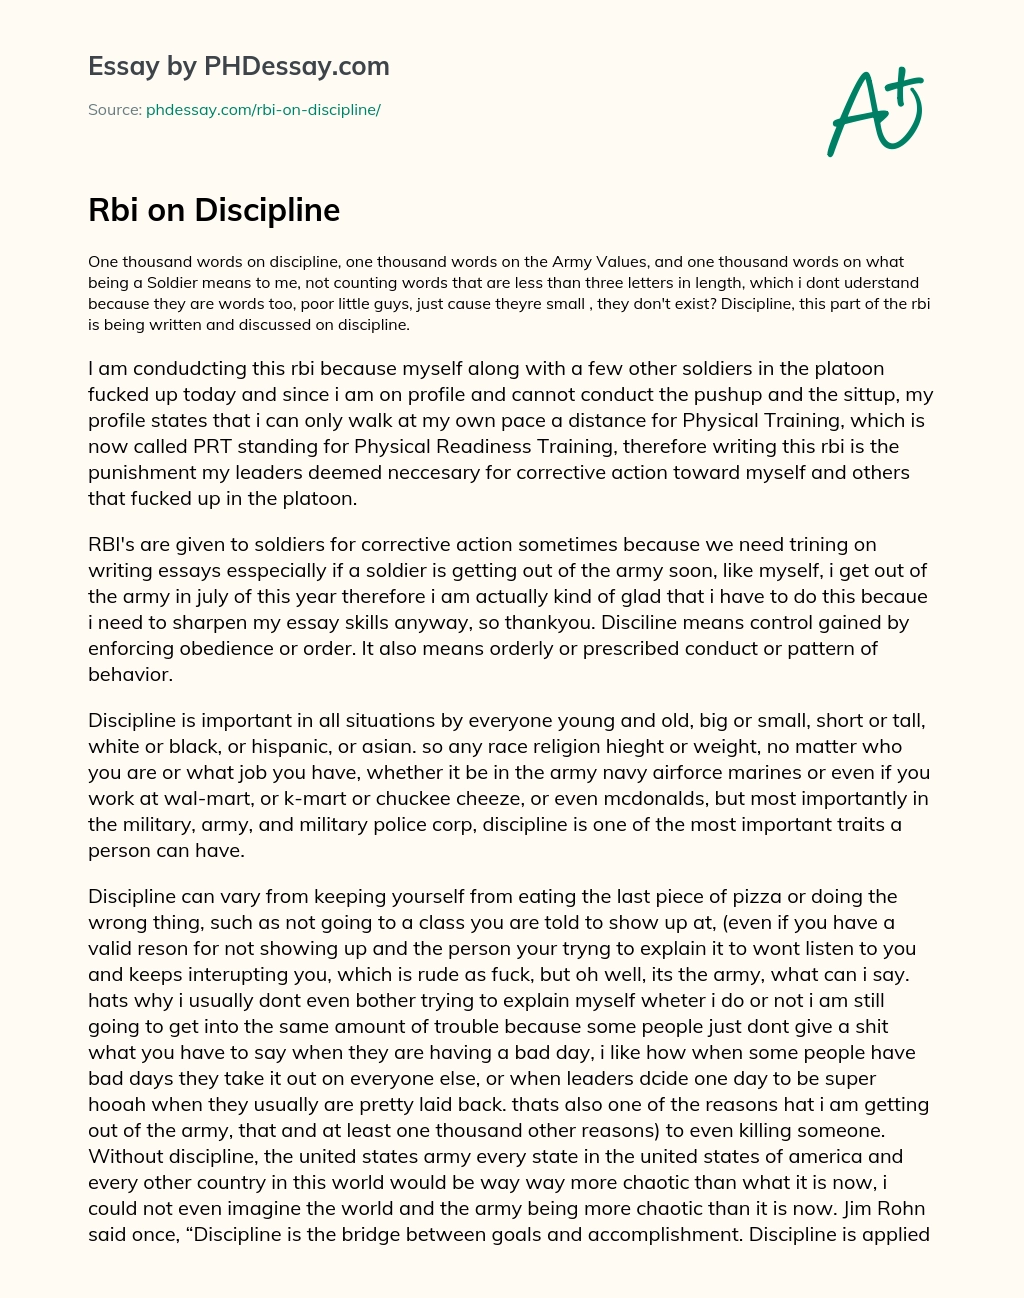 Rbi on Discipline essay